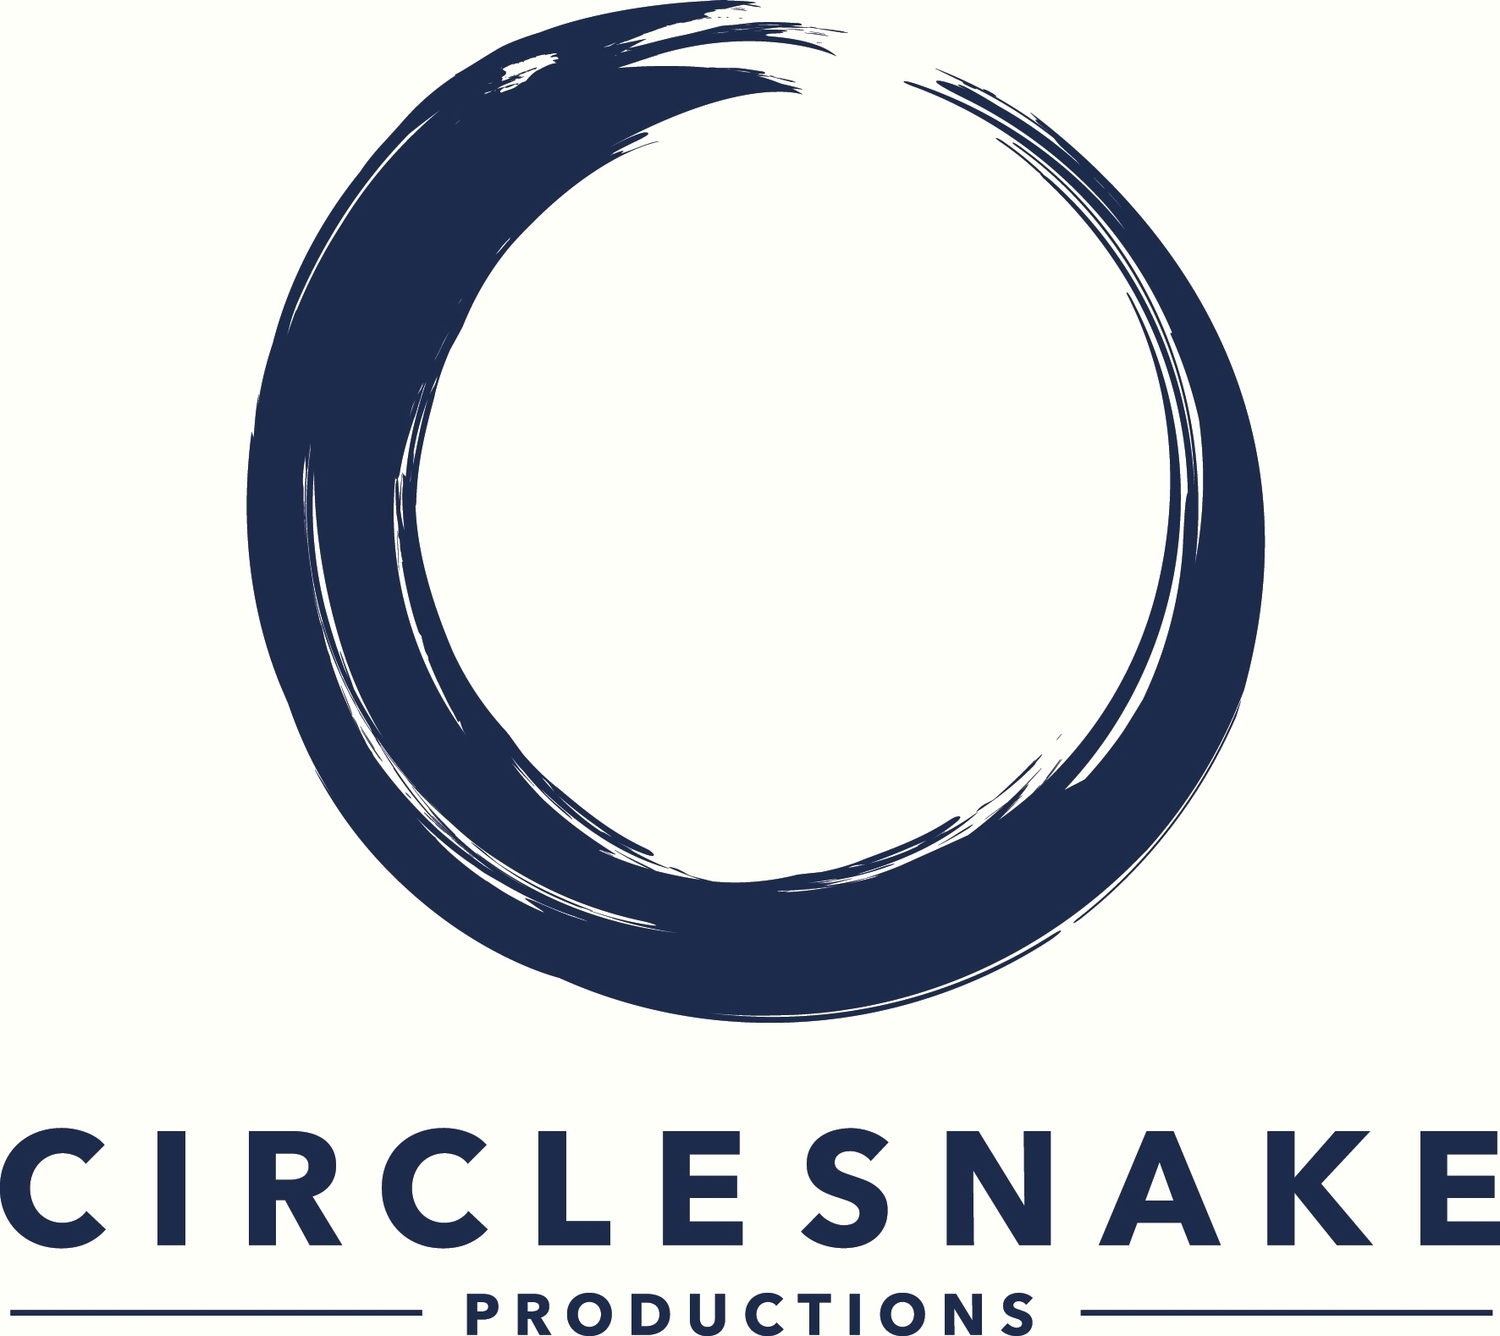 Circlesnake